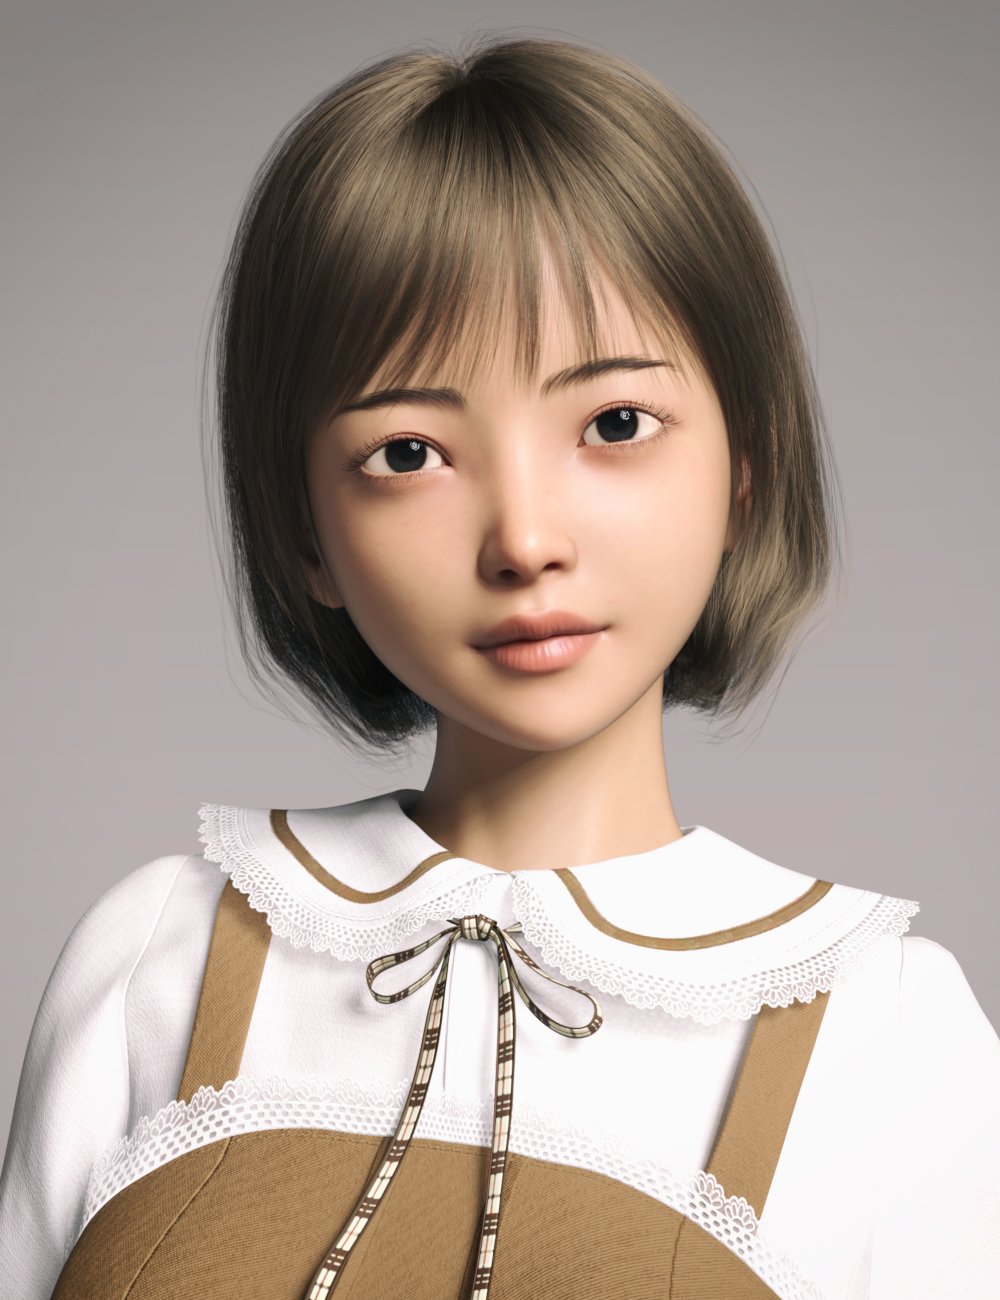 GN Teen Linmei HD for Genesis 9 by: Goanna, 3D Models by Daz 3D